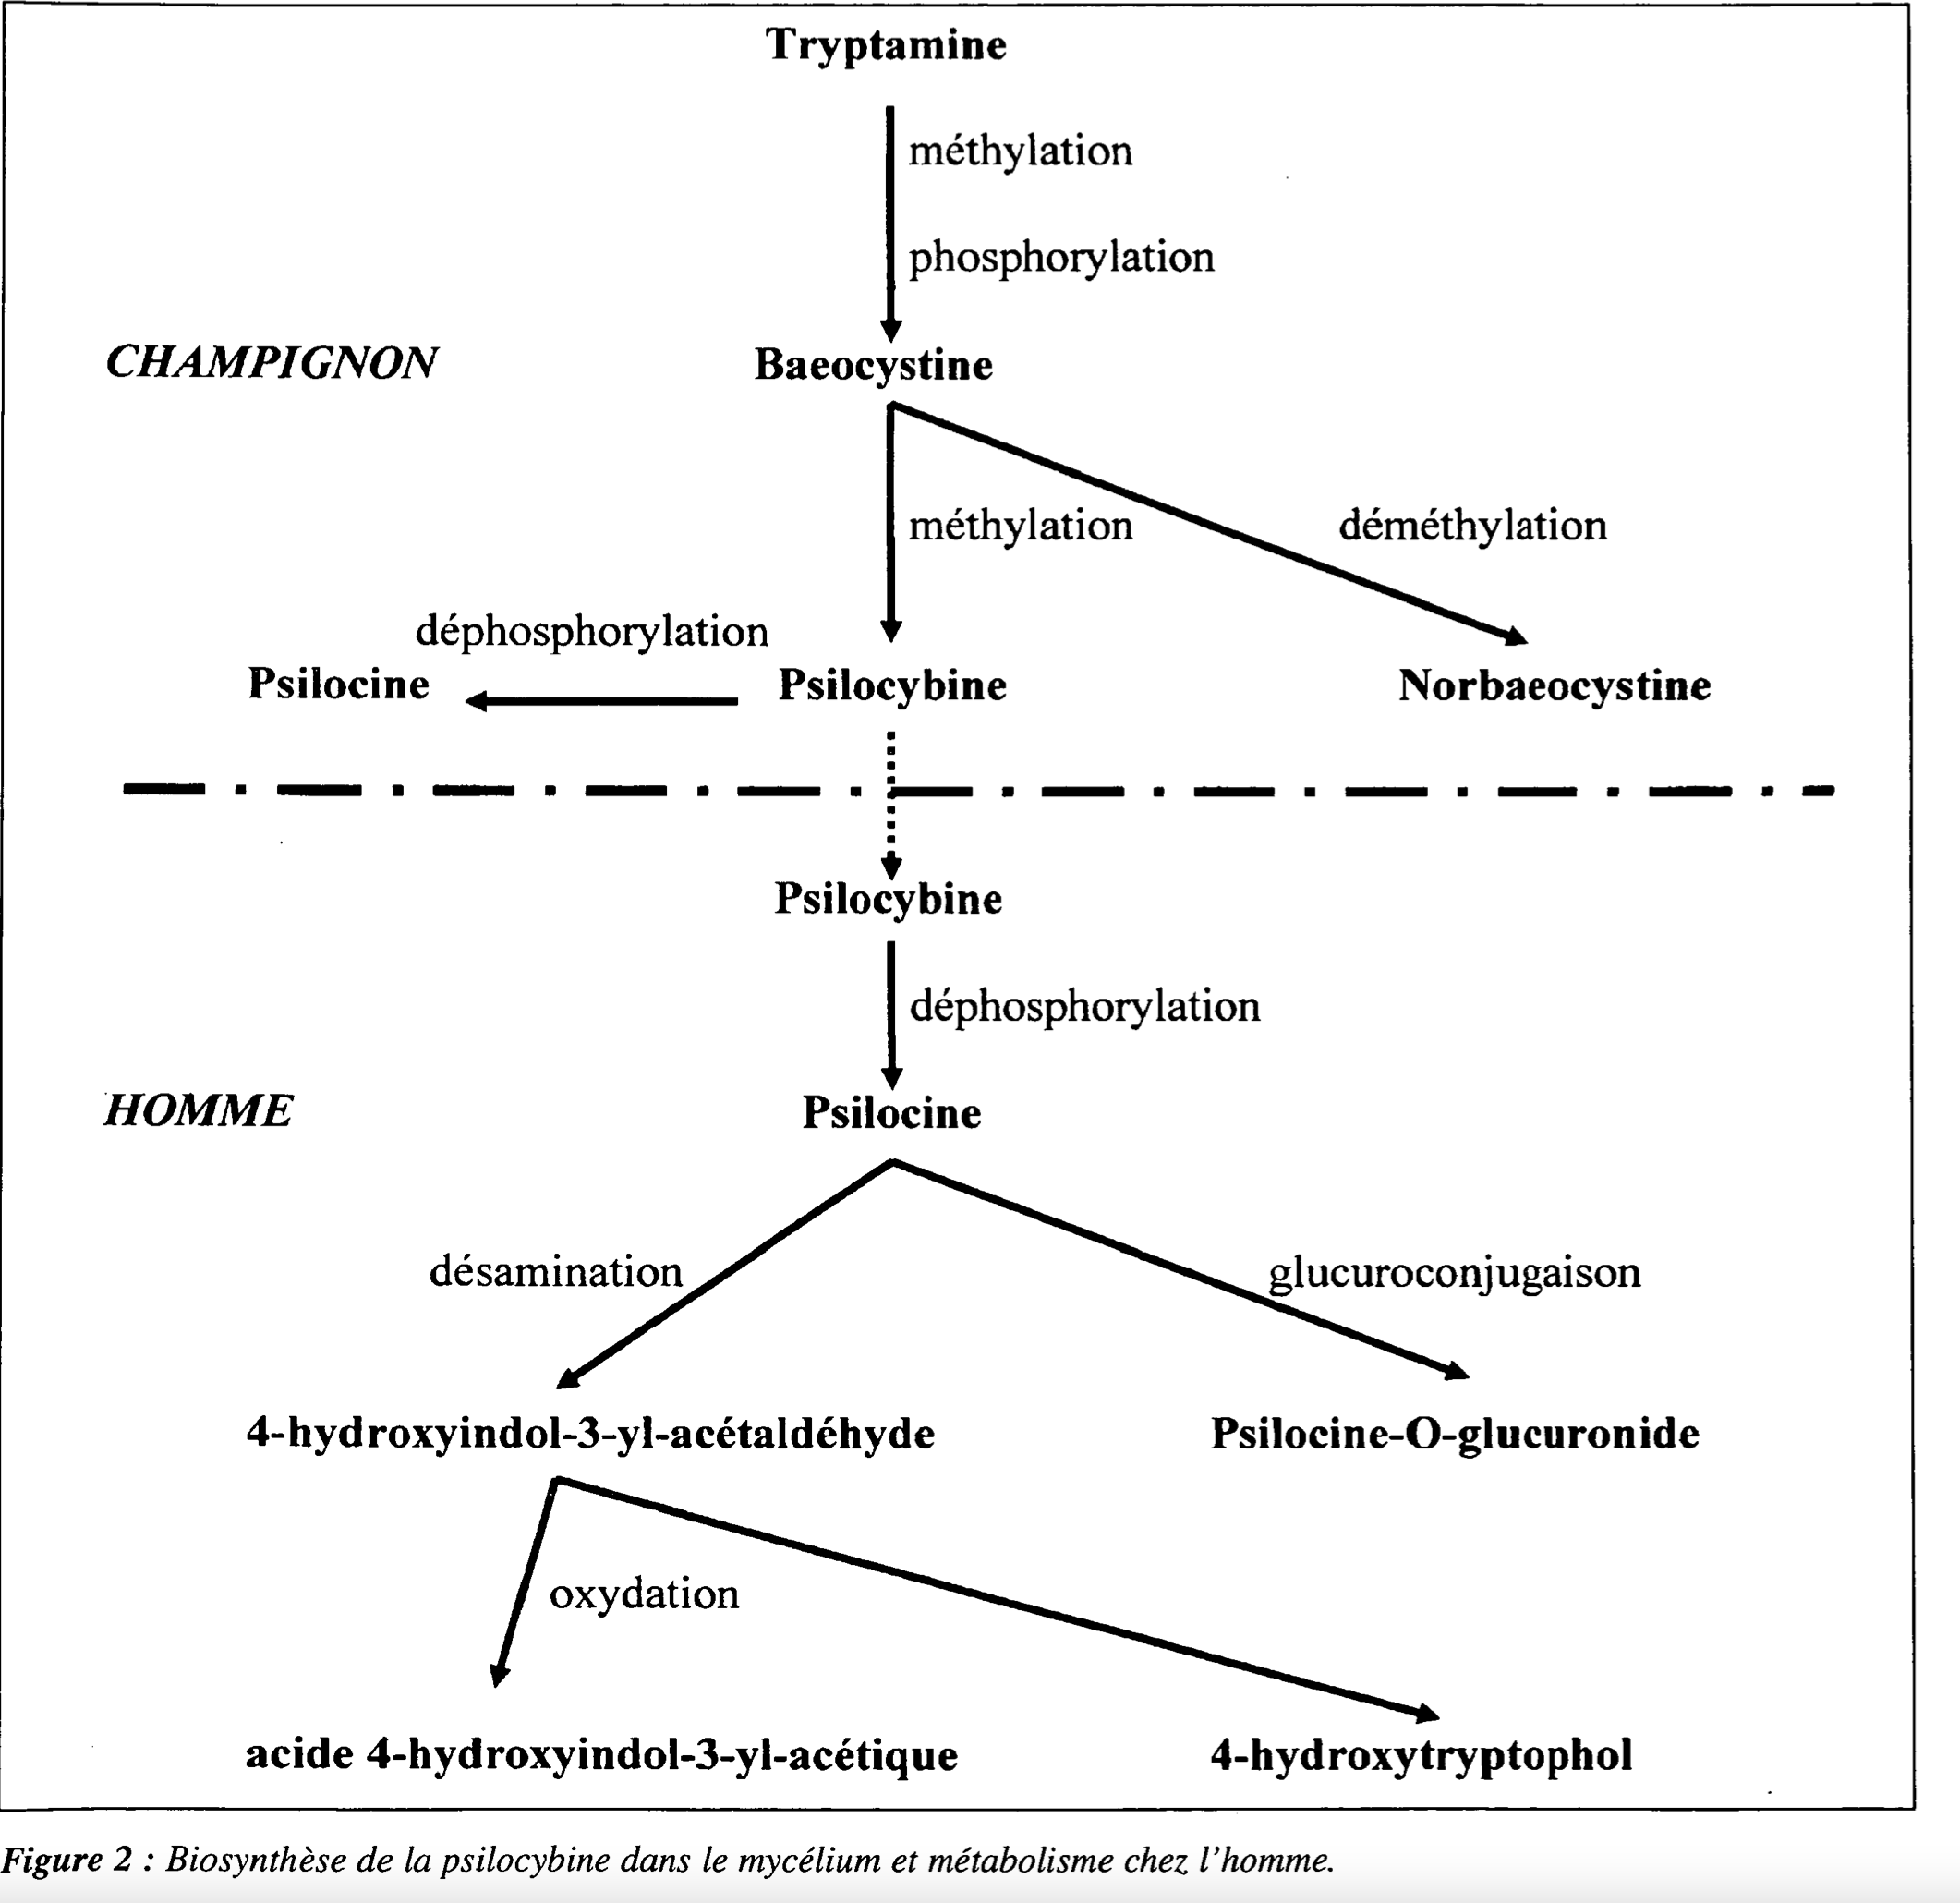 Biosynthese von Psilocybin im Mycellium und Stoffwechsel beim Menschen (Trasformation zu Psilocin). Abbildung aus Annales de Toxicologie Analytique, Band XVI Nr. 1, S. 39